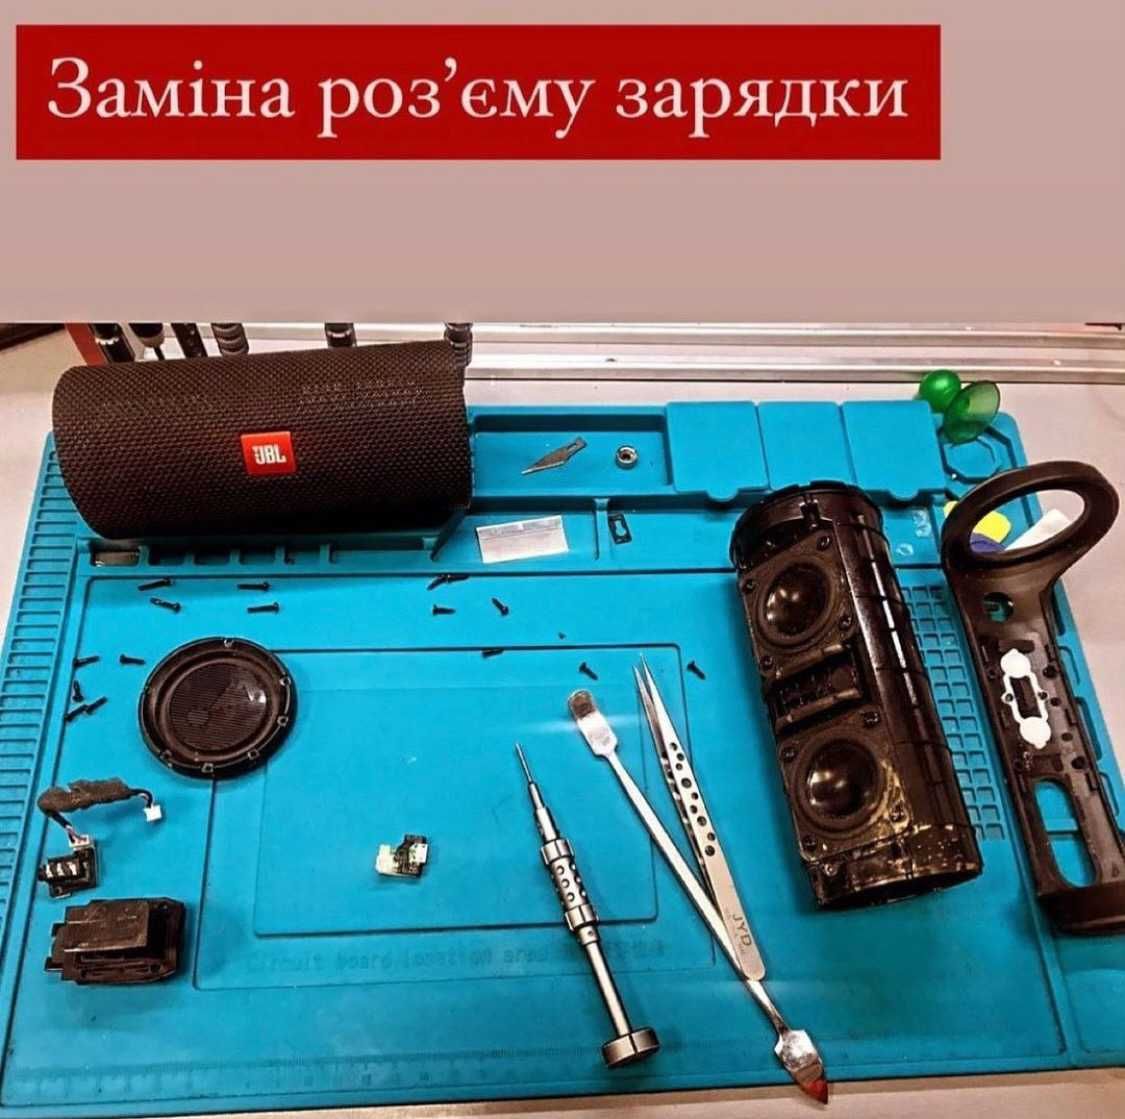 Сучасний ремонт мобільних телефонів,планшетів у Львові XIAOMI, Samsung